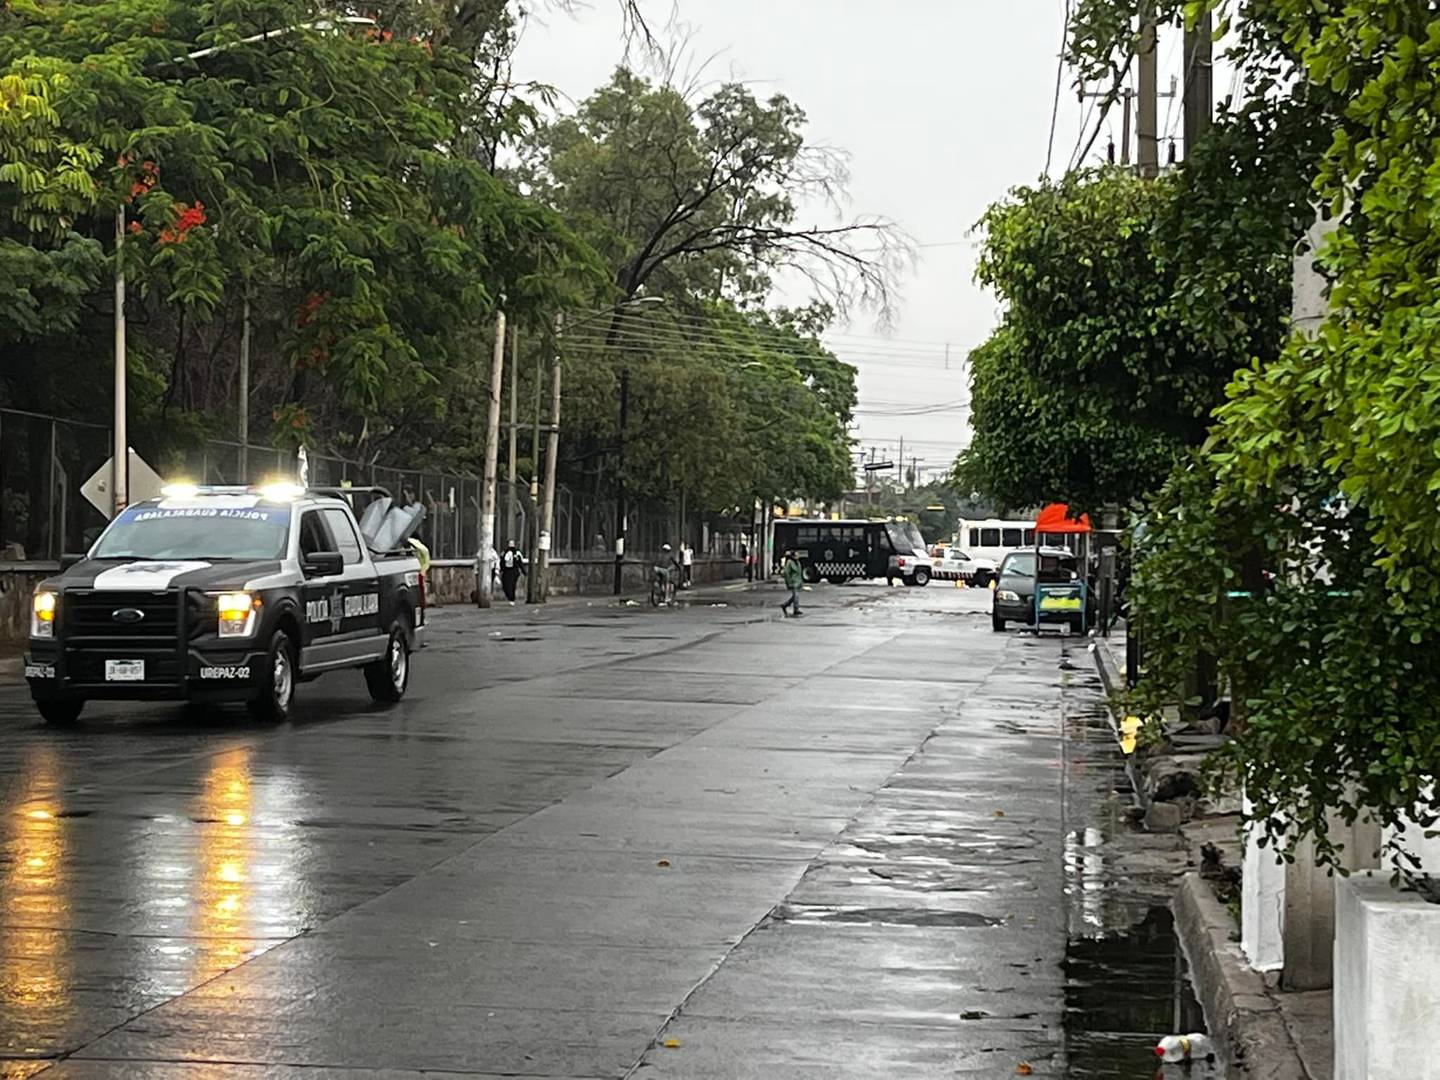 Los vecinos denunciaron que la autoridad cerró de manera arbitraria la calle Federico Medrano, donde se ubica el parque y eso está generando problemas viales importantes.